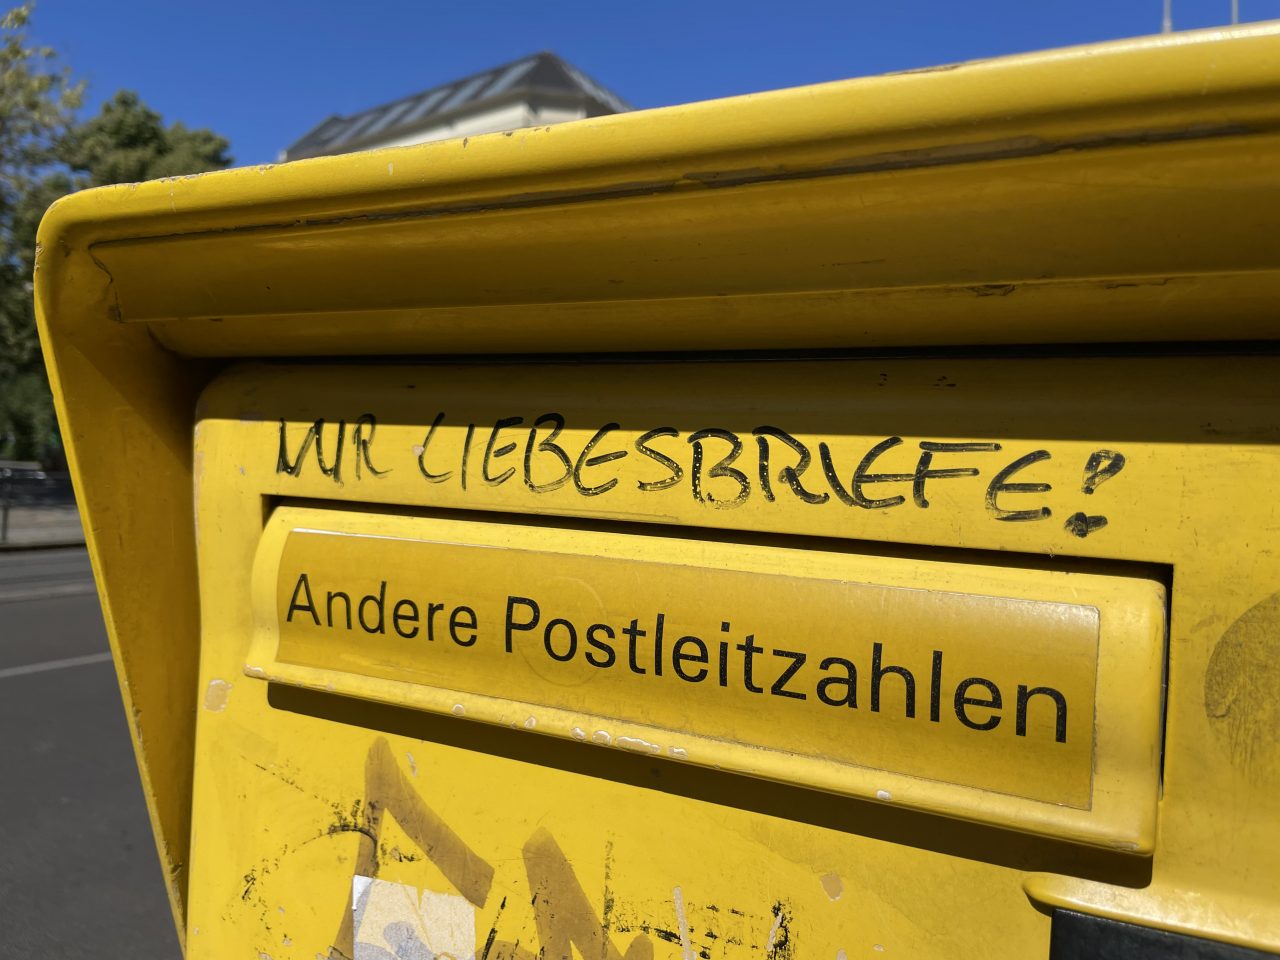 gelber Briefkasten an der Straße - über der Einwurfmöglichkeit "Andere Postleitzahlen" steht "Nur Liebesbriefe!"